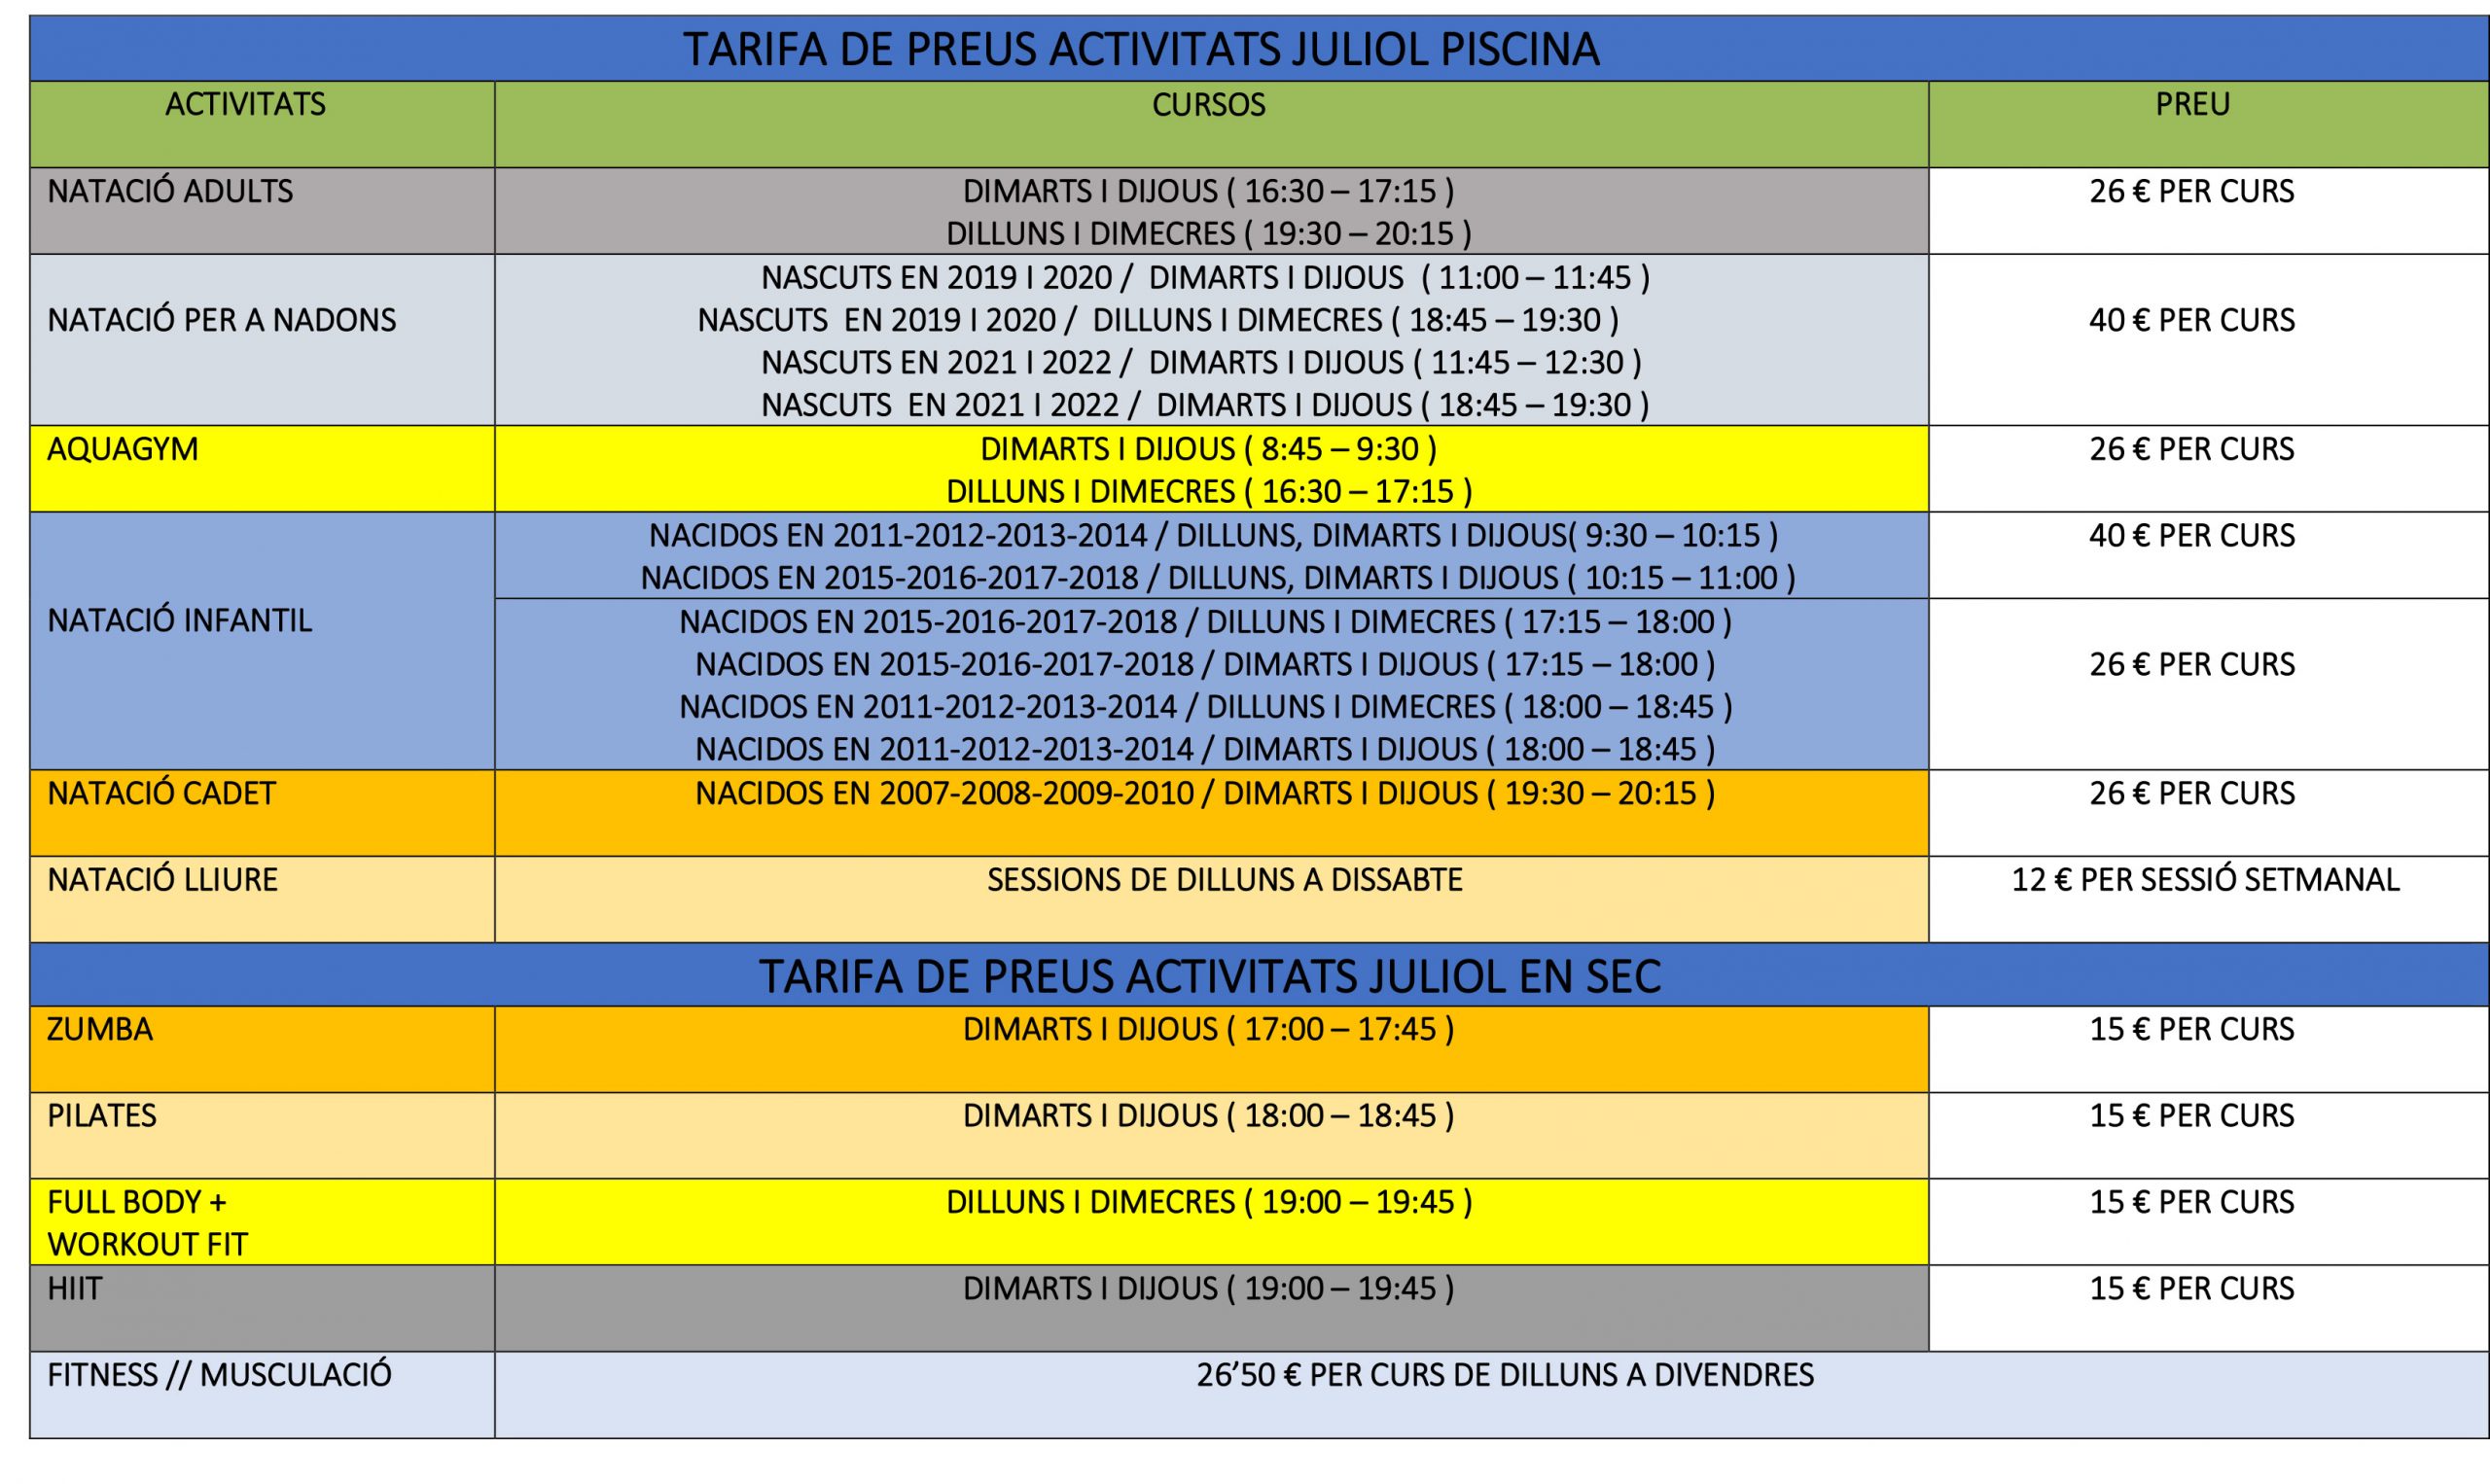 VLC-TARIFA PRECIOS ACTIVIDADES PISCINA Y GIMNASIO JULIO 2022